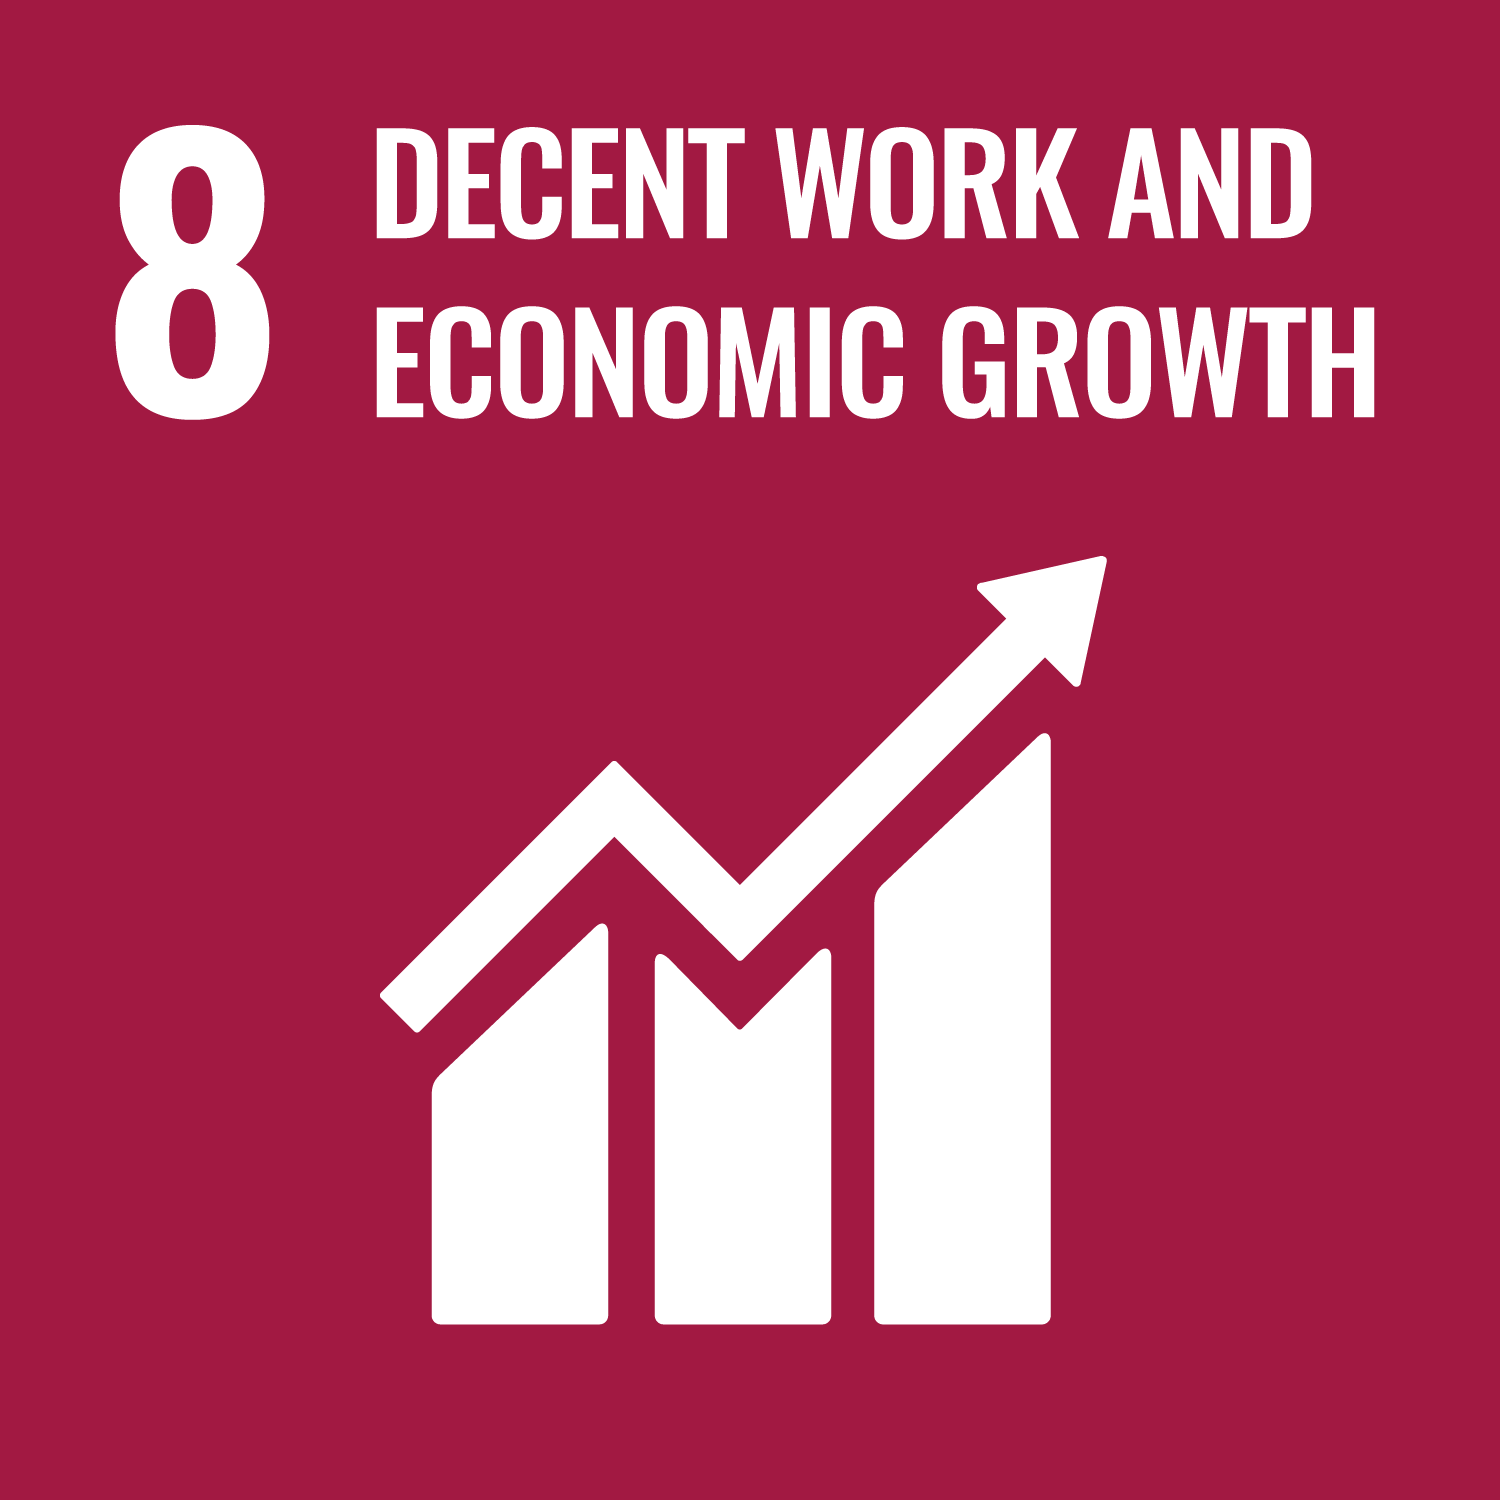 UN SDG 8 image